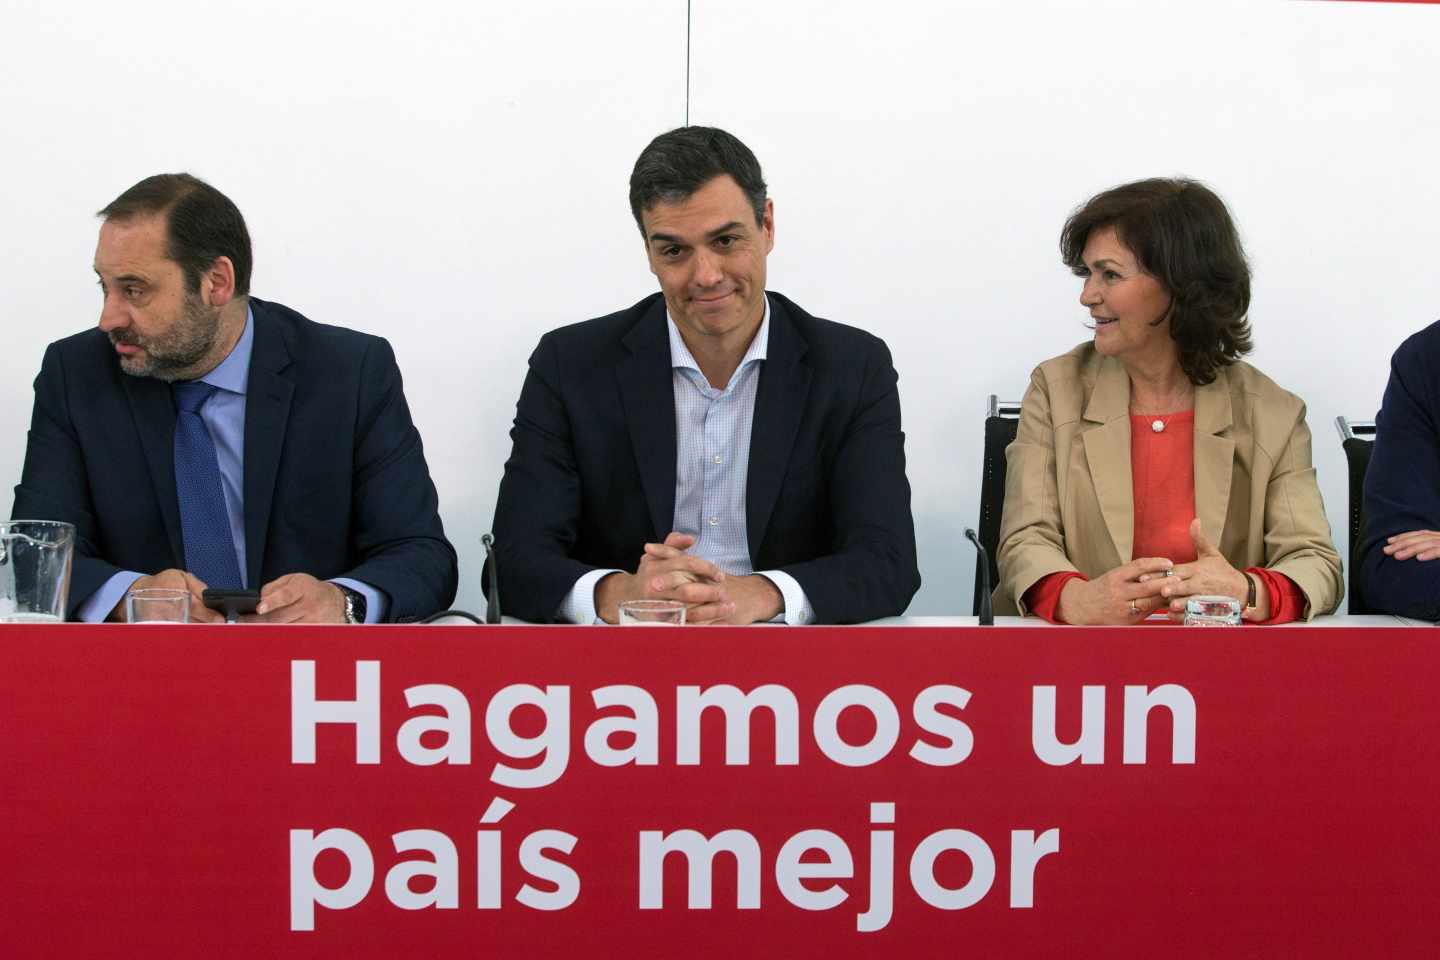 El PSOE registra la moción de censura contra Rajoy en el Congreso